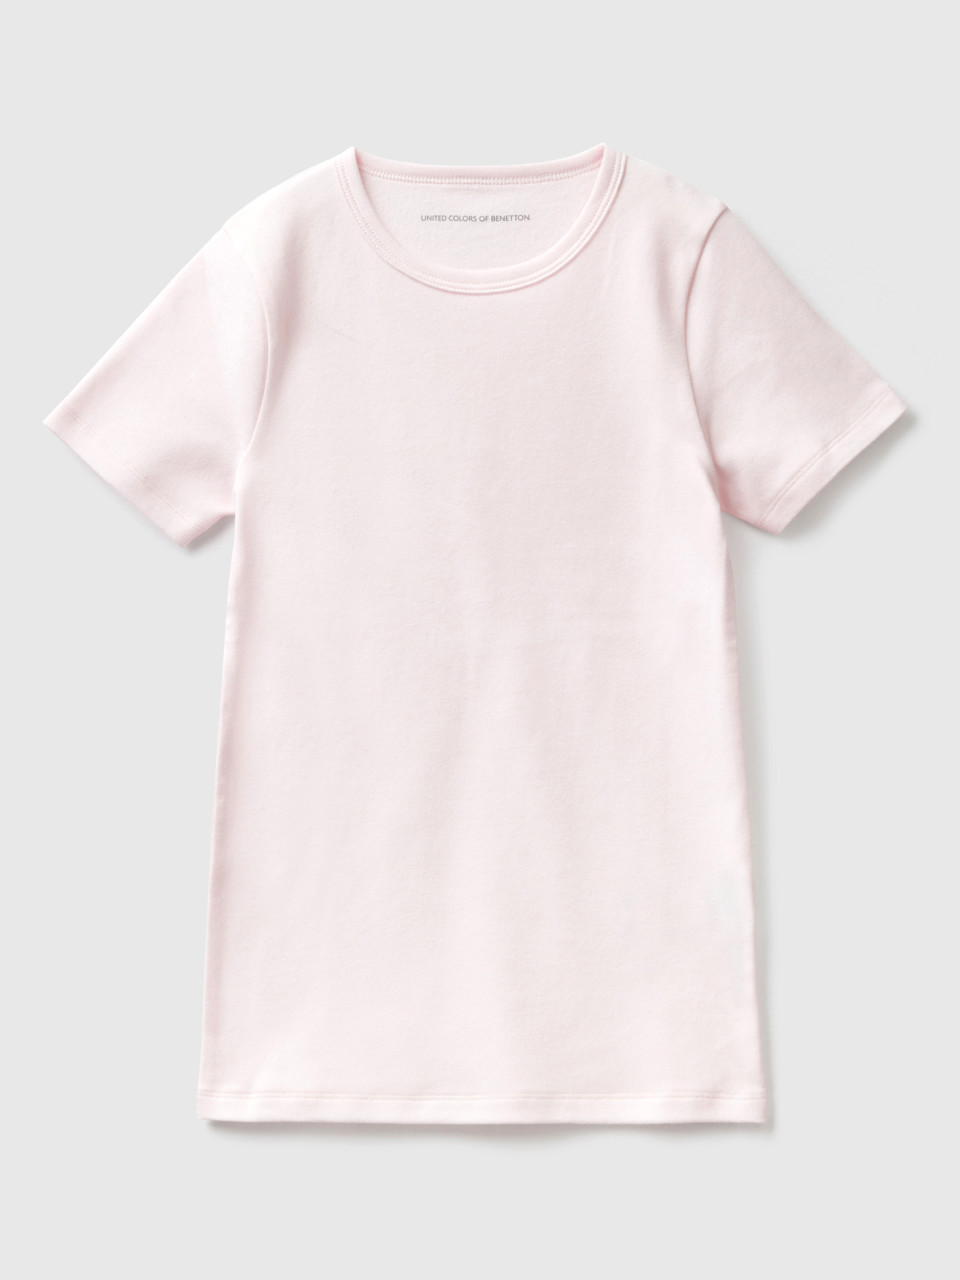 Benetton, T-shirt Manches Courtes En Coton Chaud, Rose, Enfants